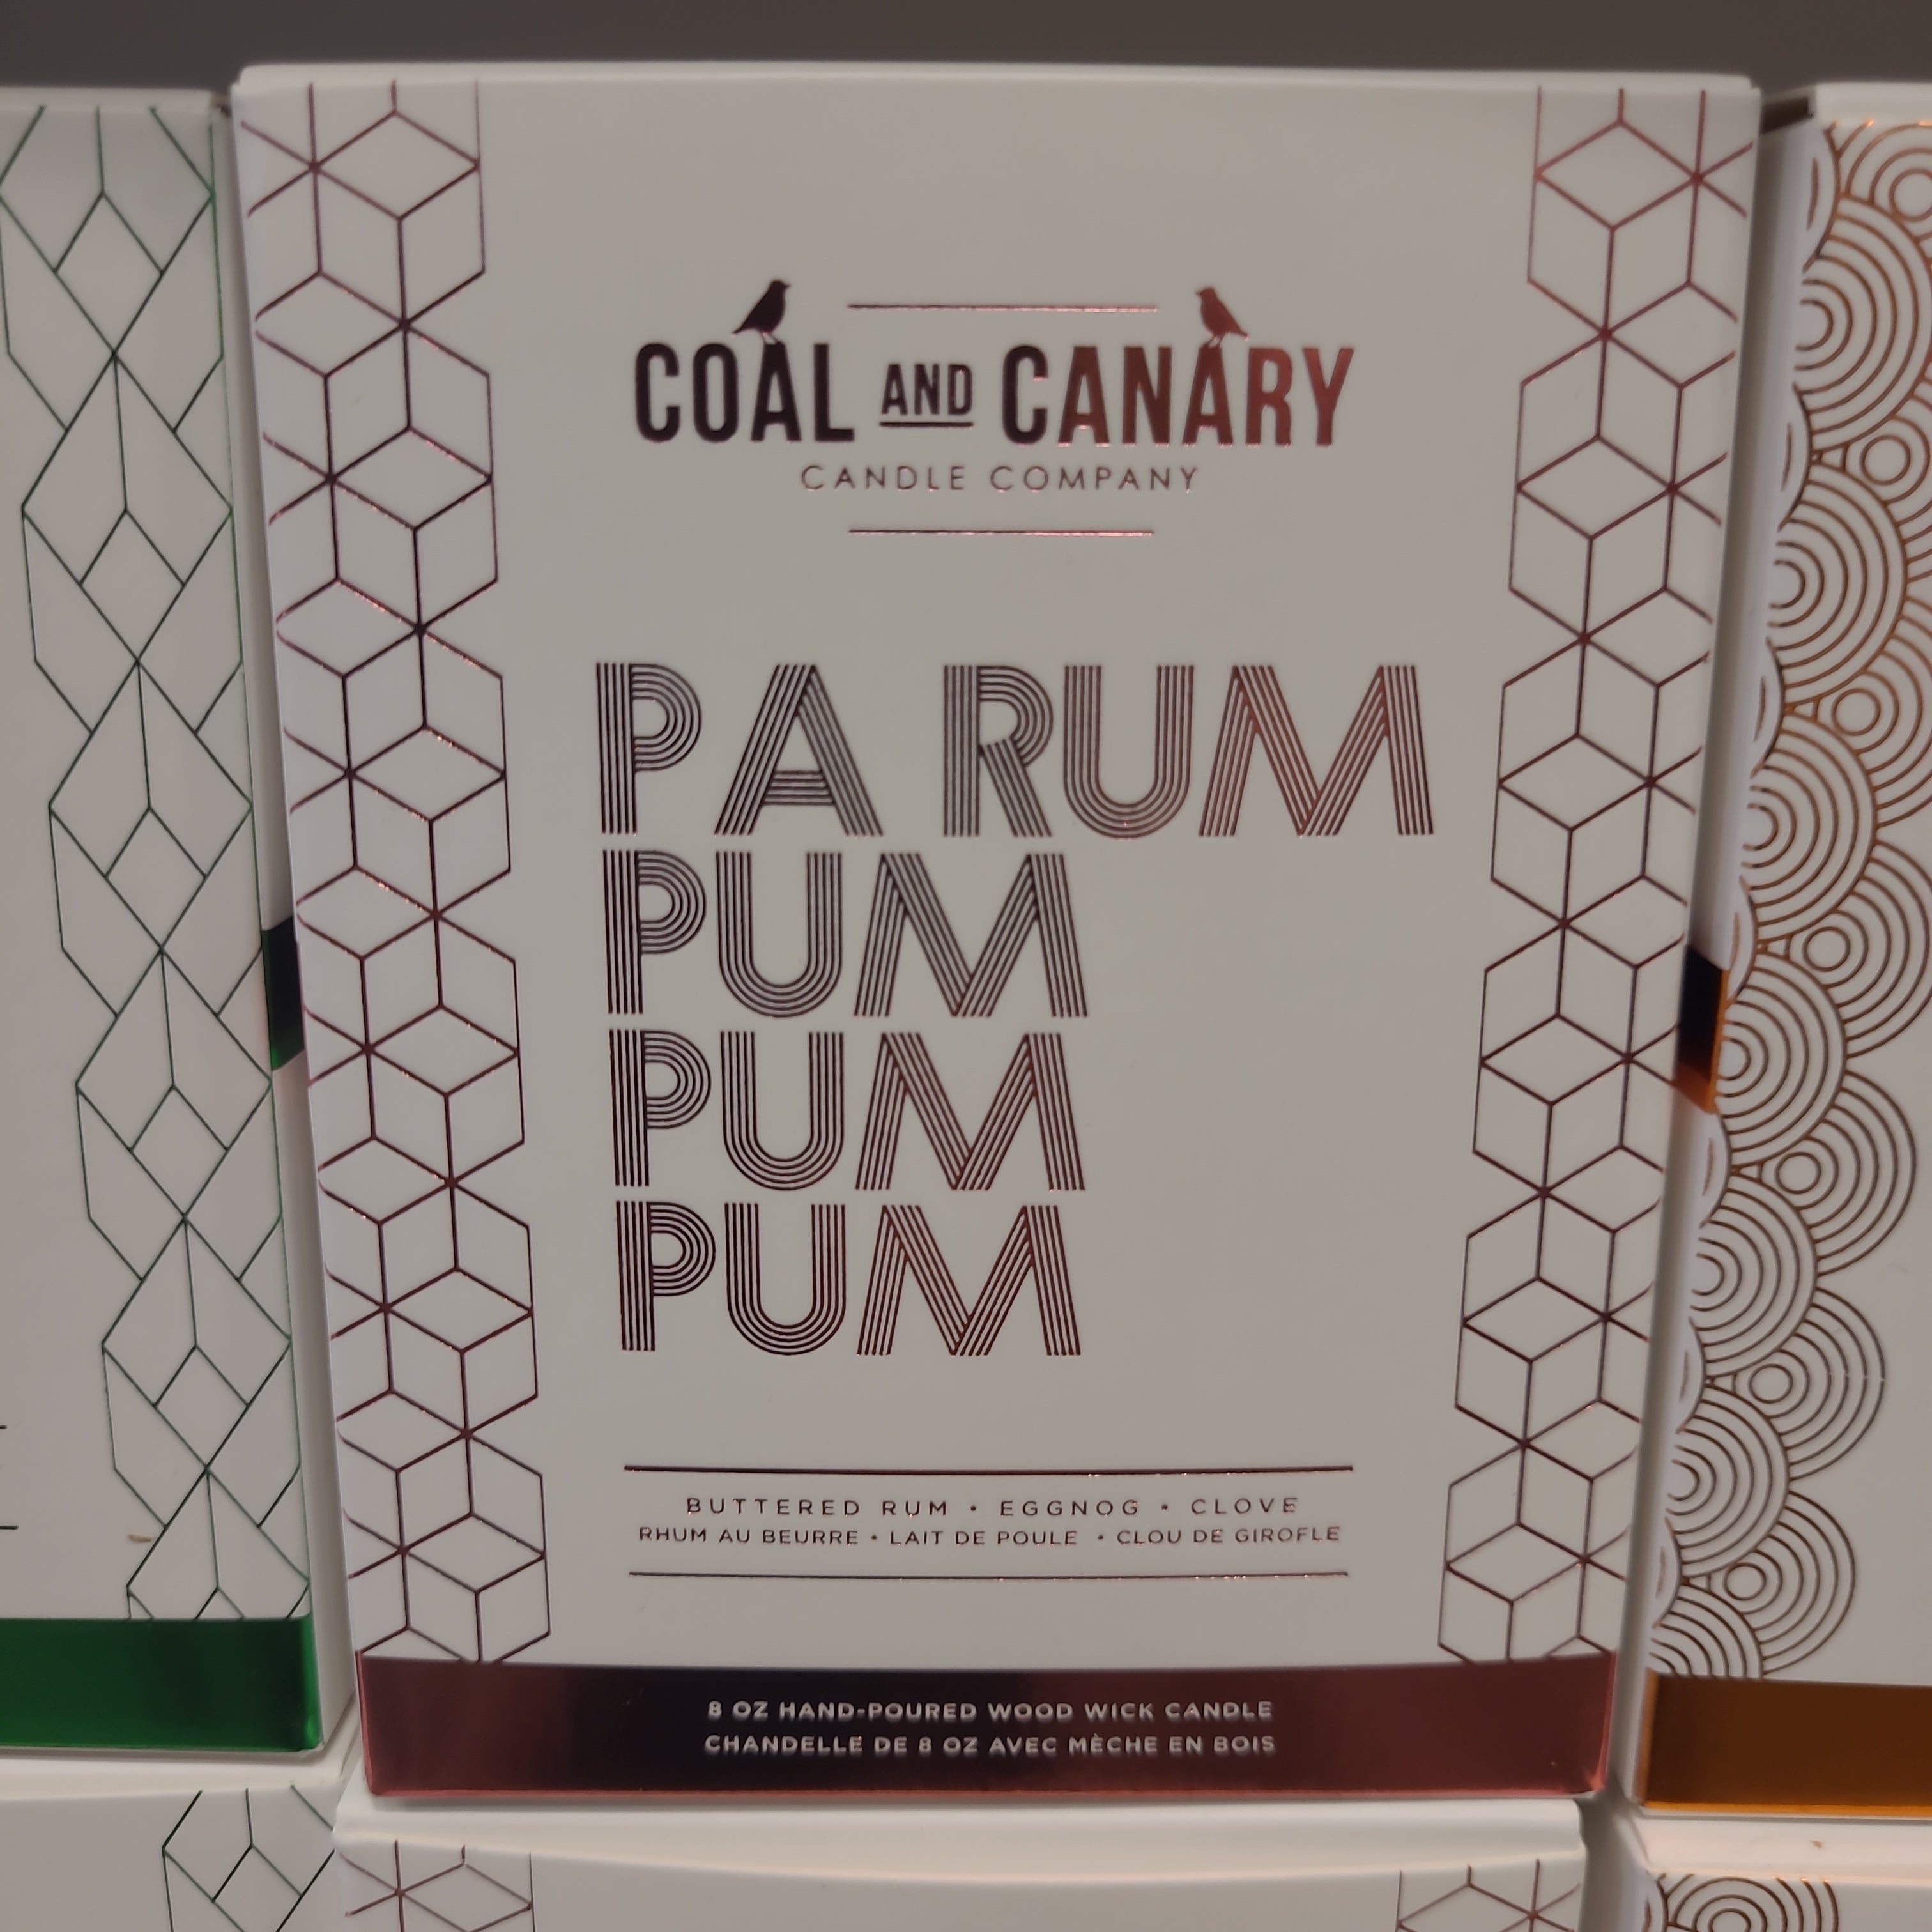 Coal and Canary - Pa Rum pum, pump,Pum